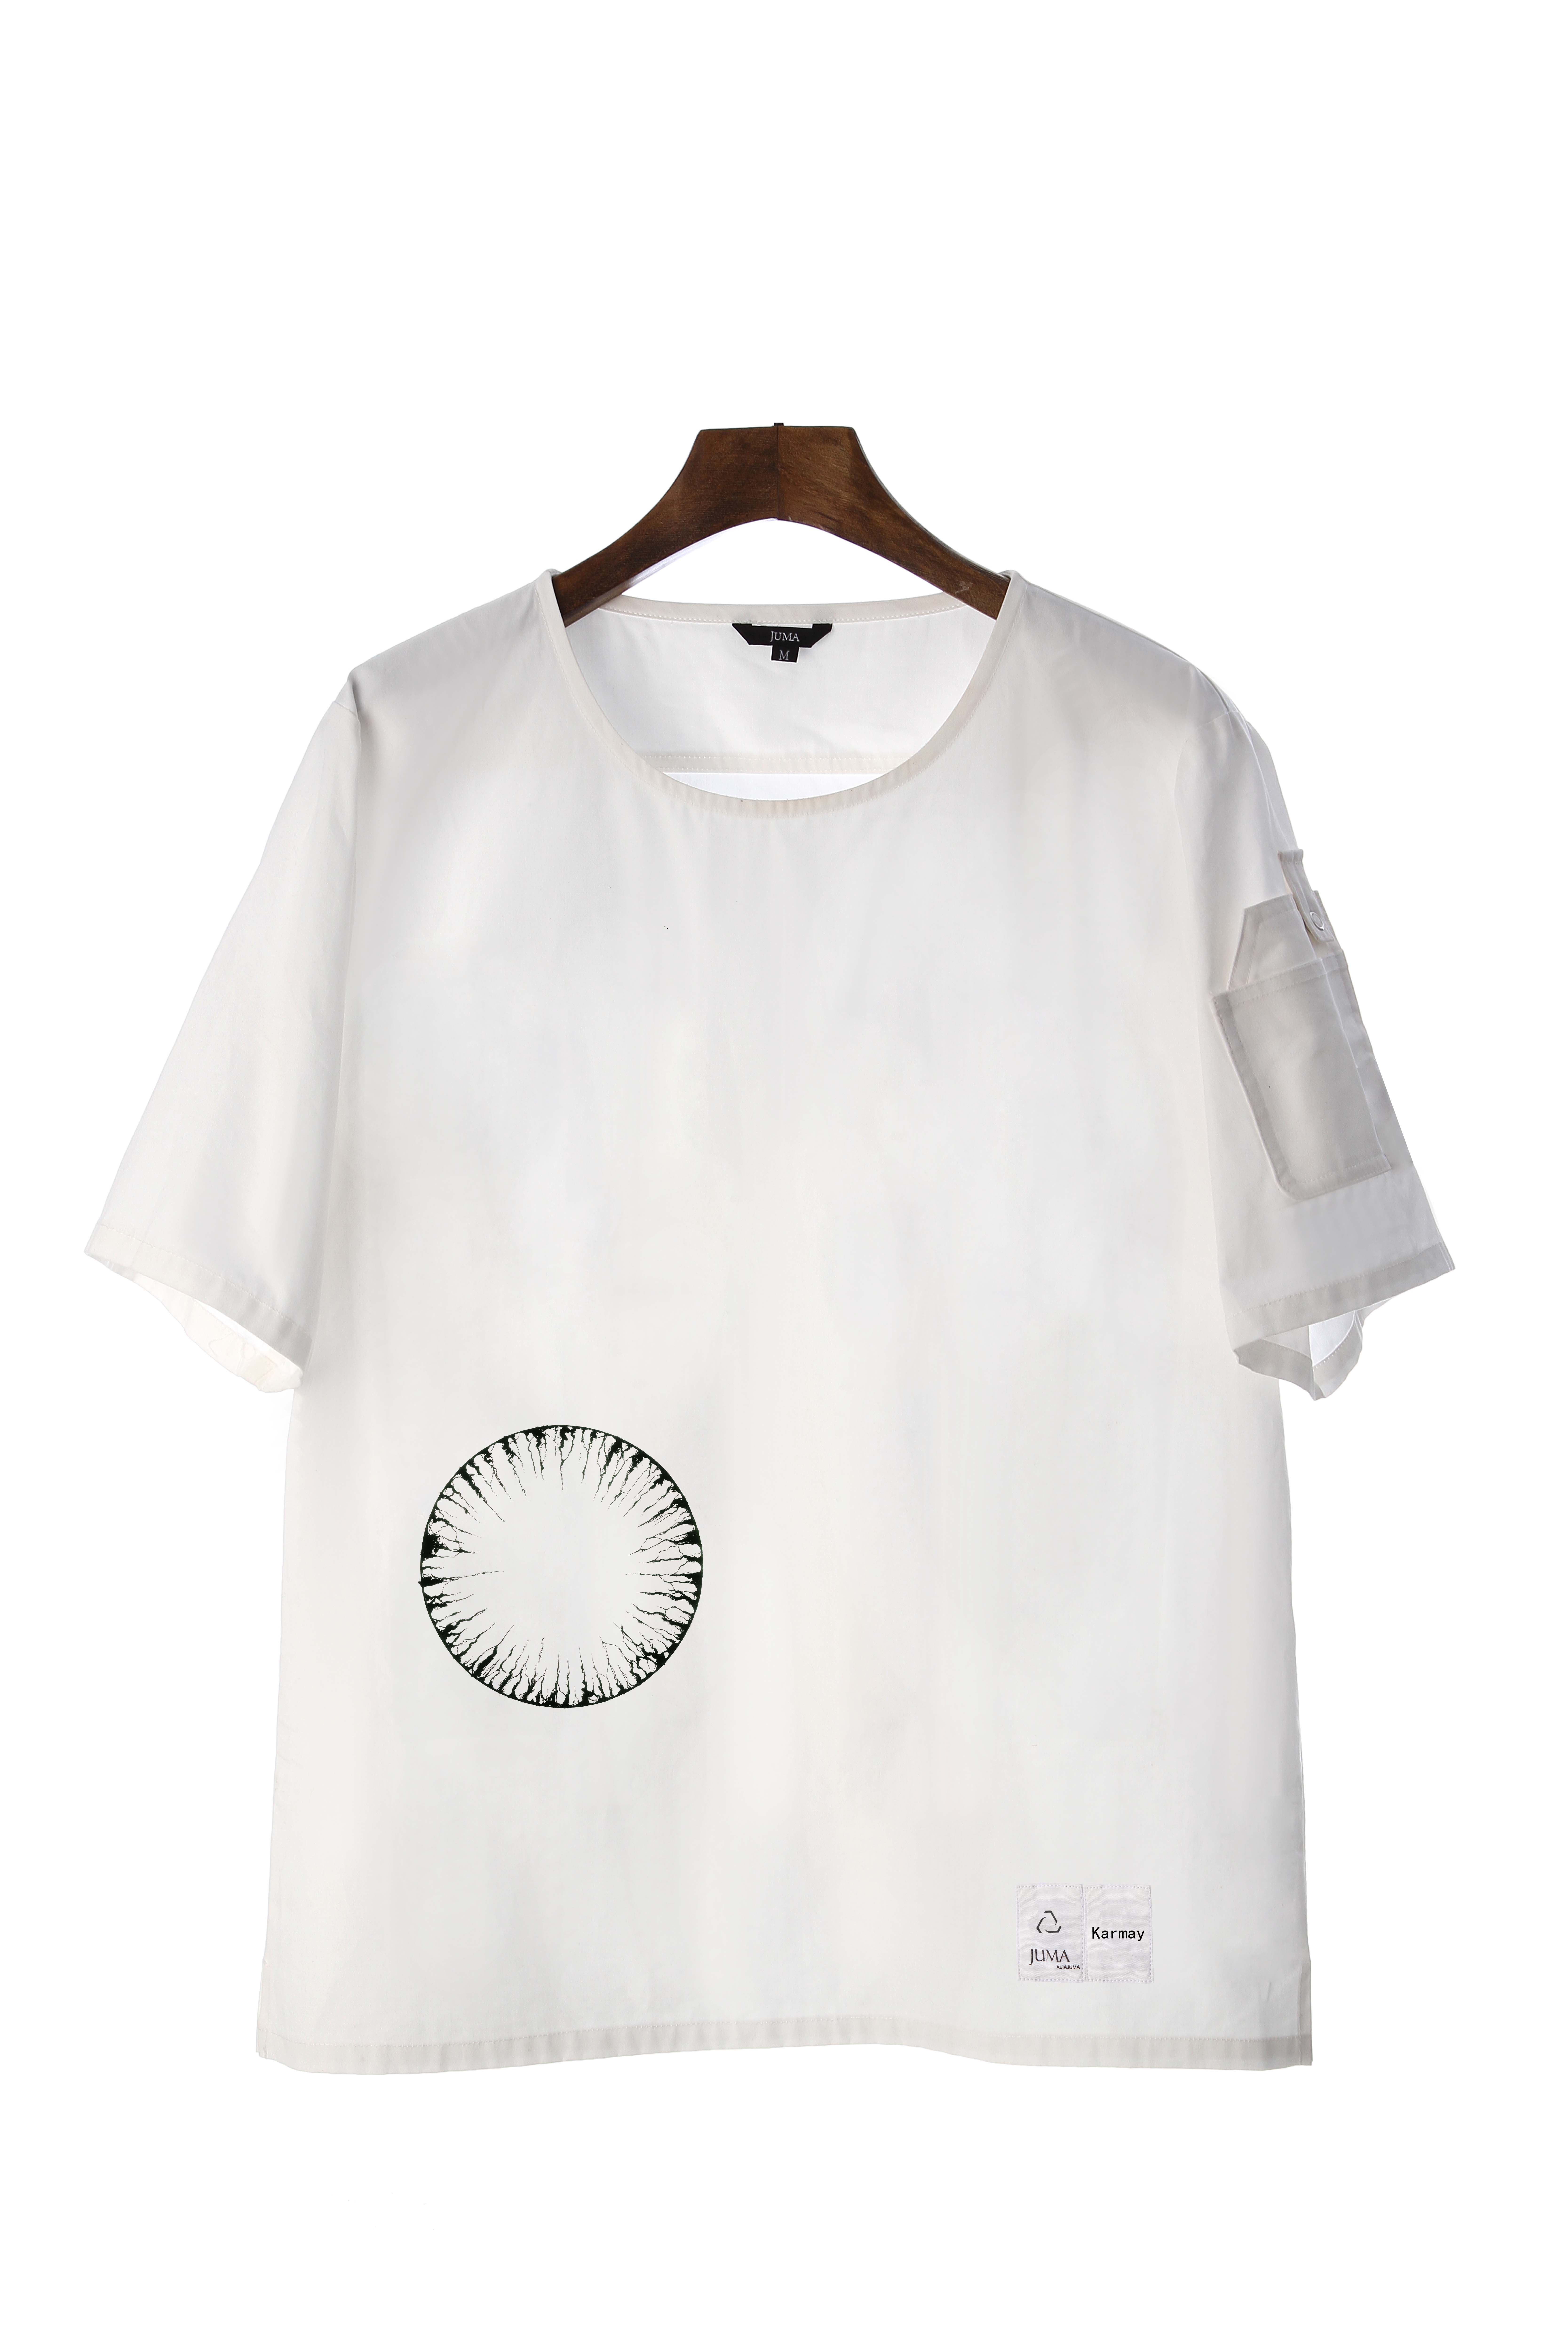 Karmay 短袖上衣-4个回收水瓶-白色｜Karmay Short Sleeved Shirt - 4 Recycled Water Bottles - White